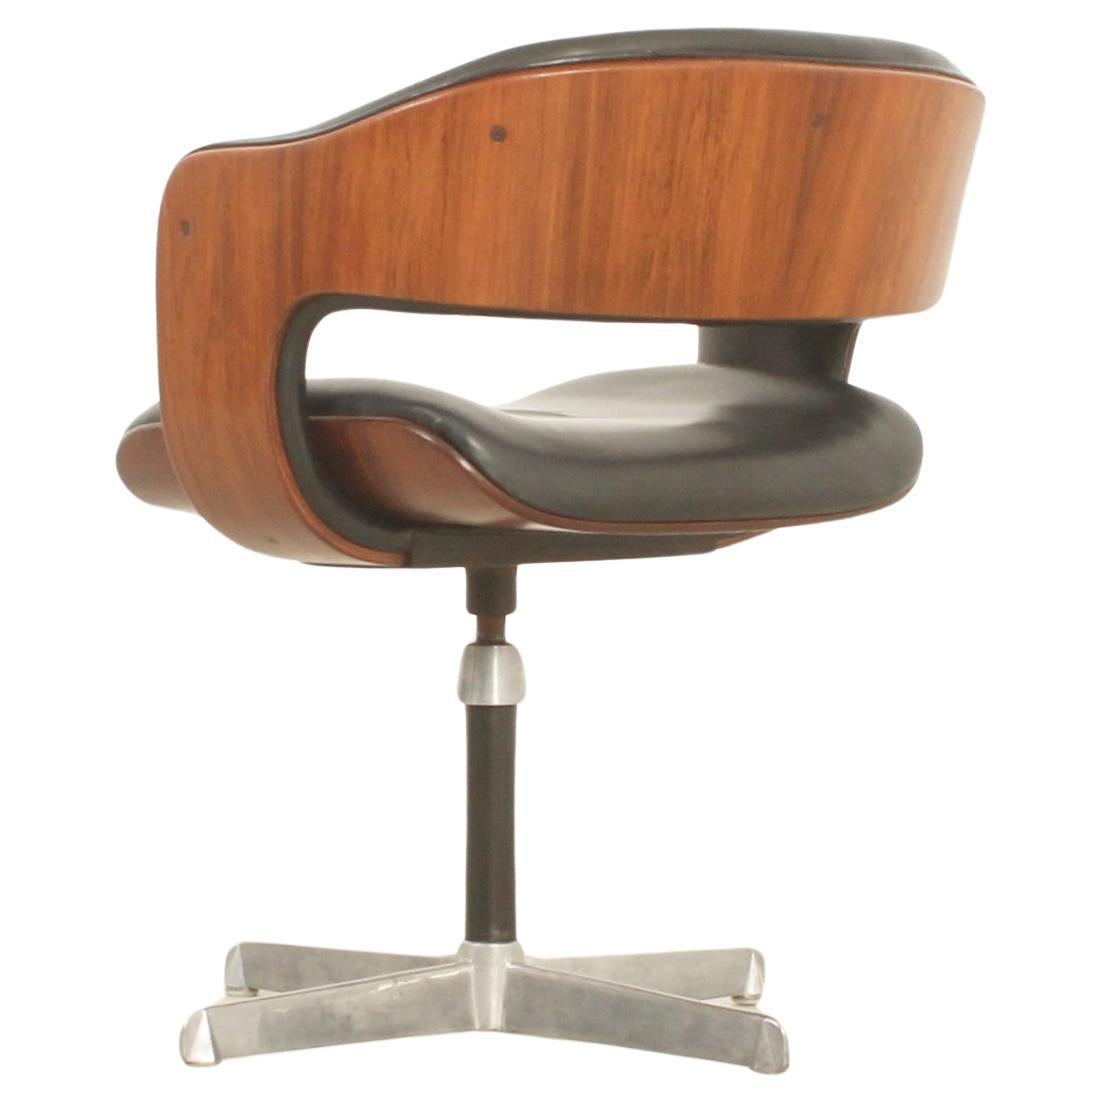 Oxford Chair by British Designer Martin Grierson for Arflex, 1963